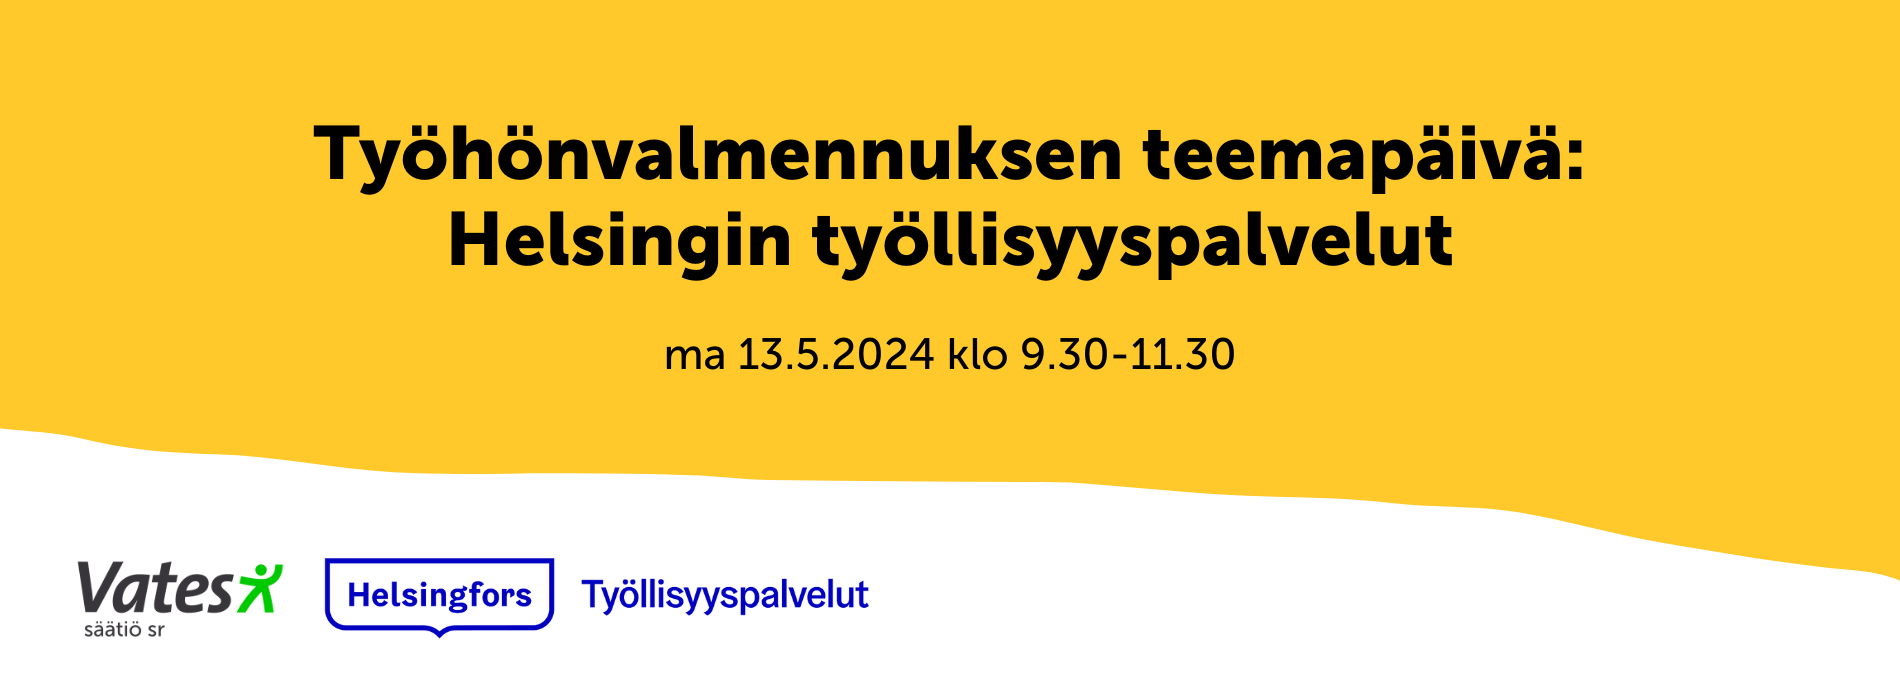 Työhönvalmennuksen teemapäivä: Helsingin työllisyyspalvelut 13.5.2024